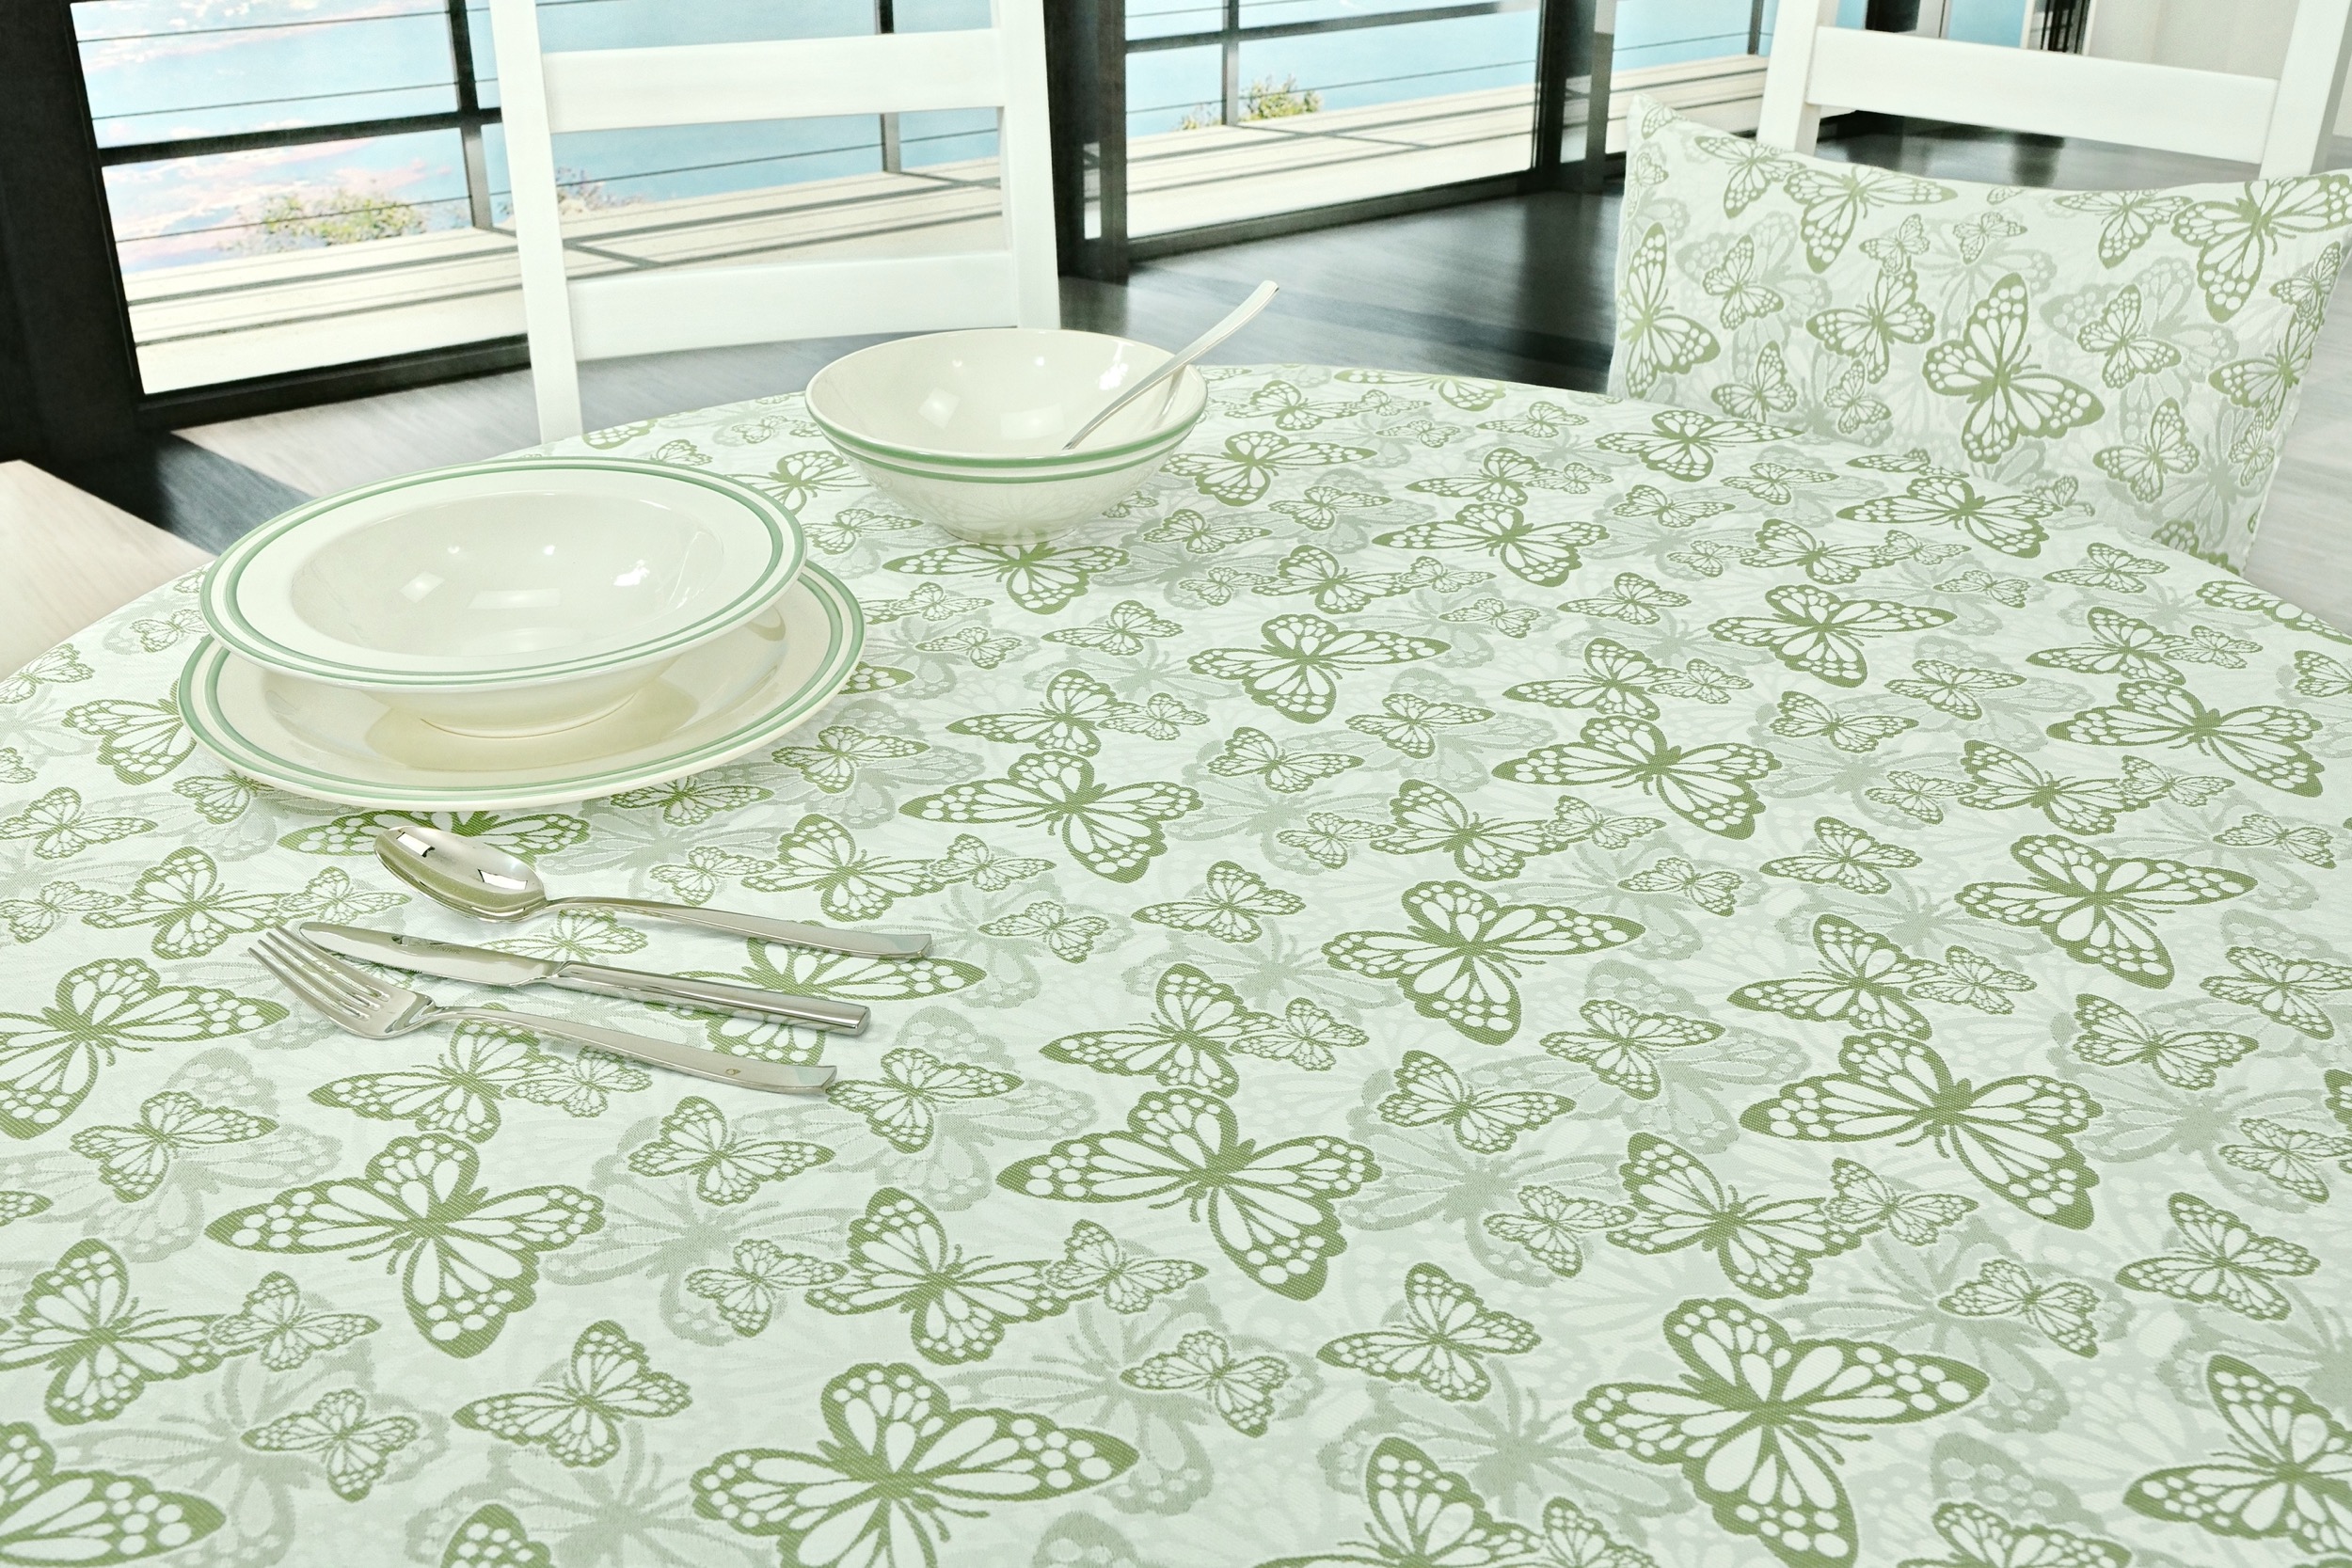 Fleckgeschützte Tischdecke Weiß Grün Muster Springtime Breite 100 cm OVAL